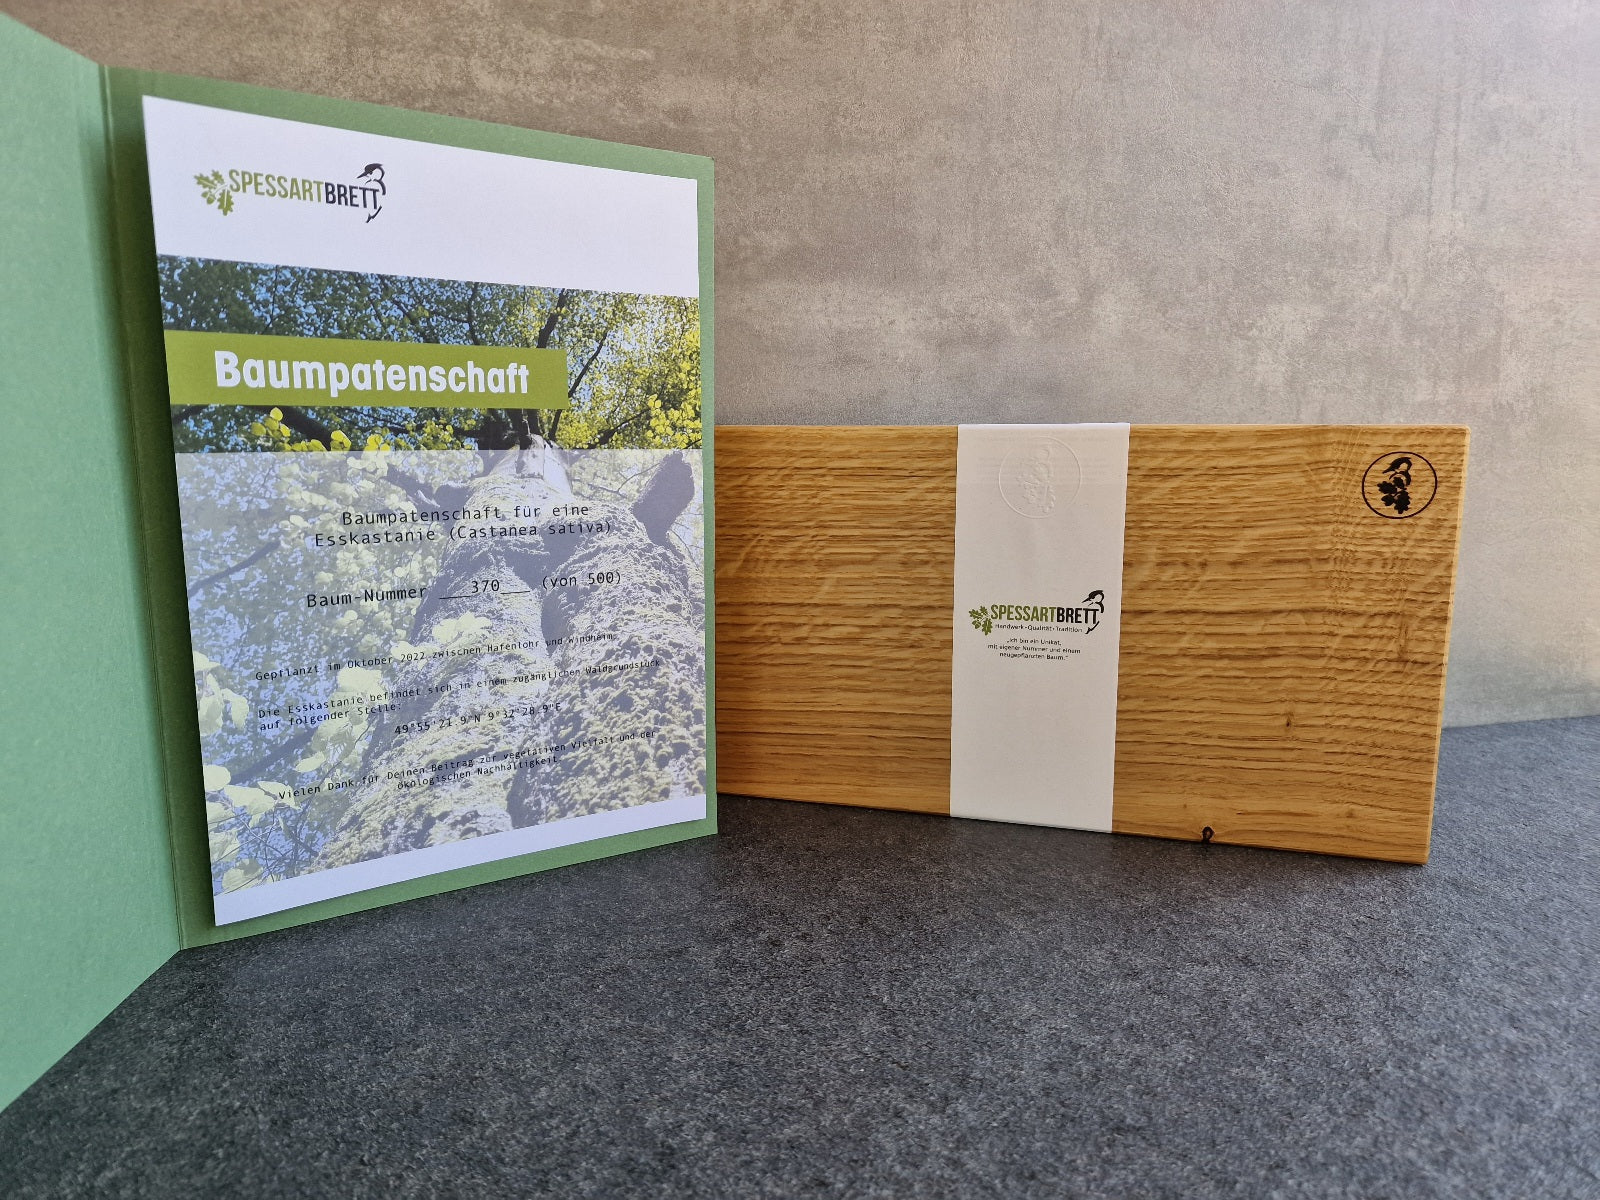 Mappe mit einer Baumpatenschafts-Urkunde und einem Eiche Gemüsebrett mit einer Spessartbrett-Banderole.